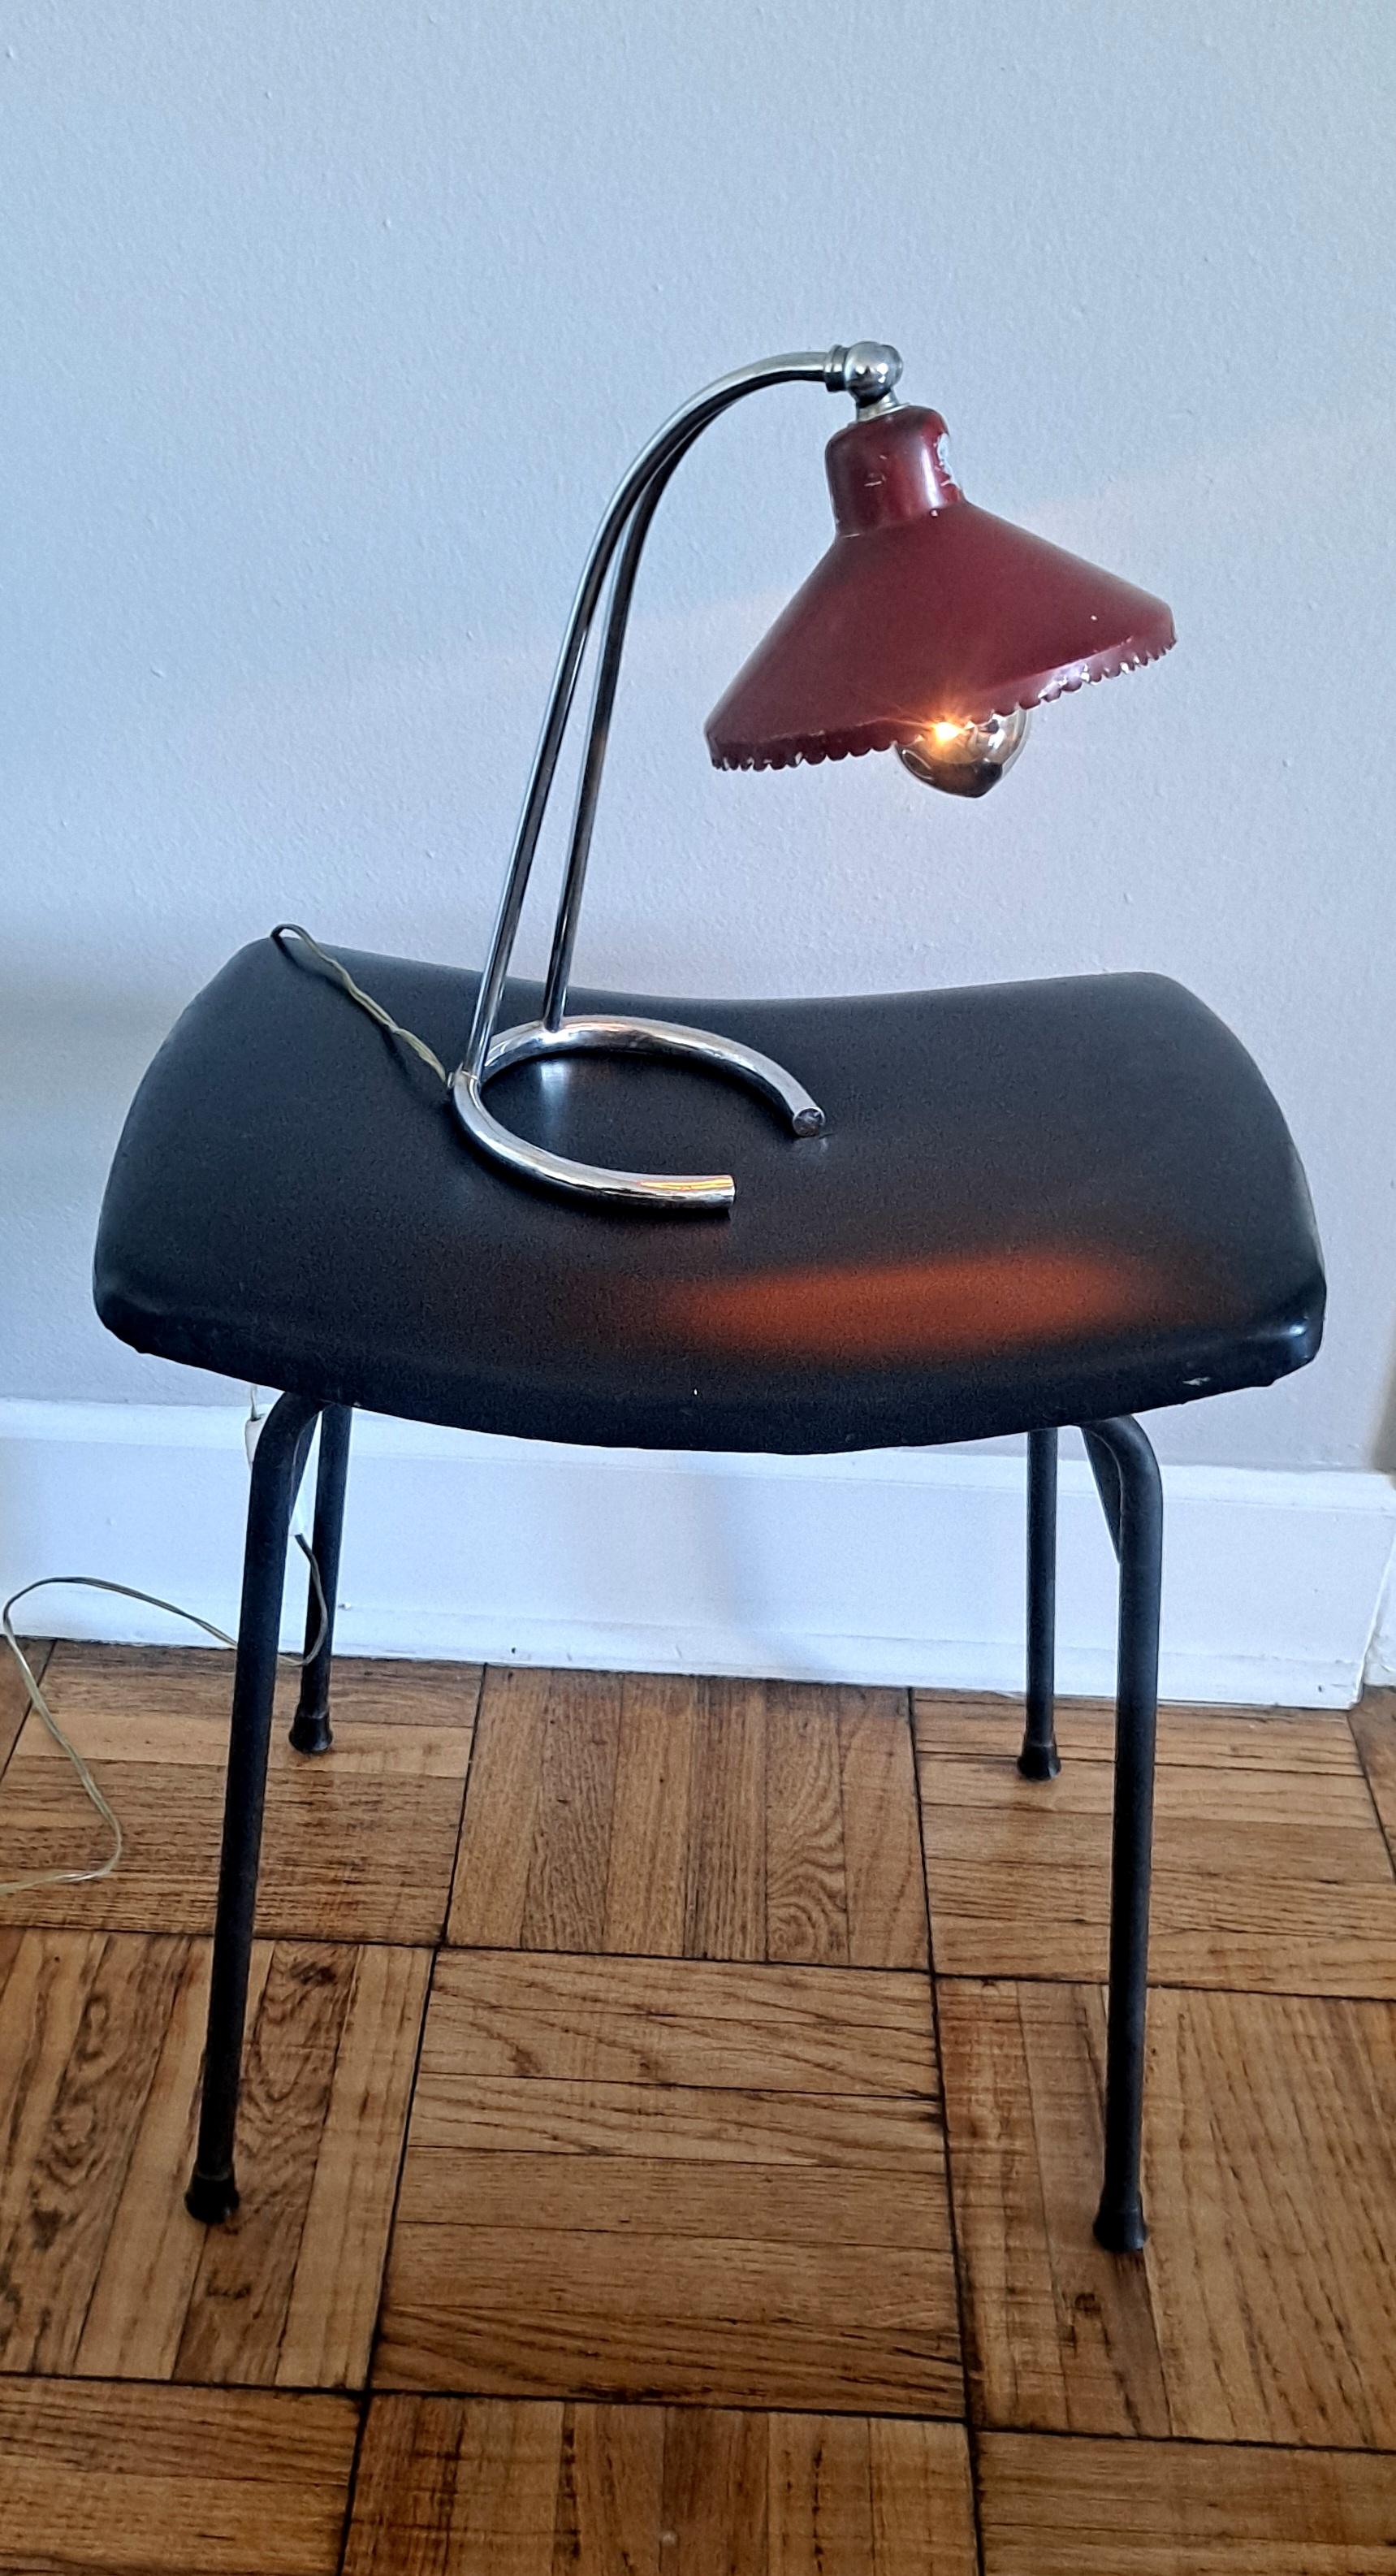  Lampe de table italienne en état original. Plus petit  Taille mais design agréable. La lampe est en bon état de marche, l'abat-jour en roseau est pivotant.